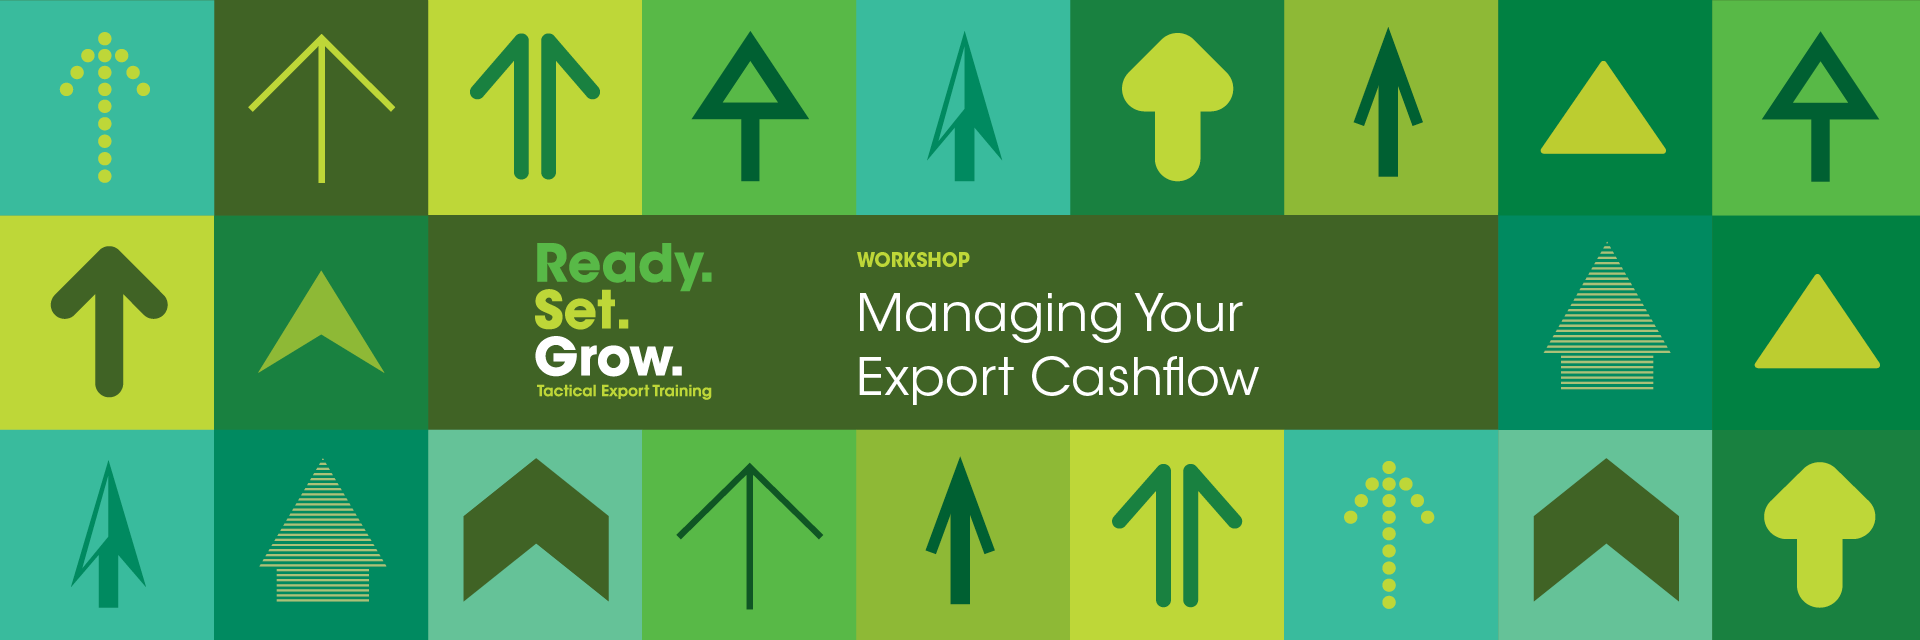 Managing Your Export Cashflow